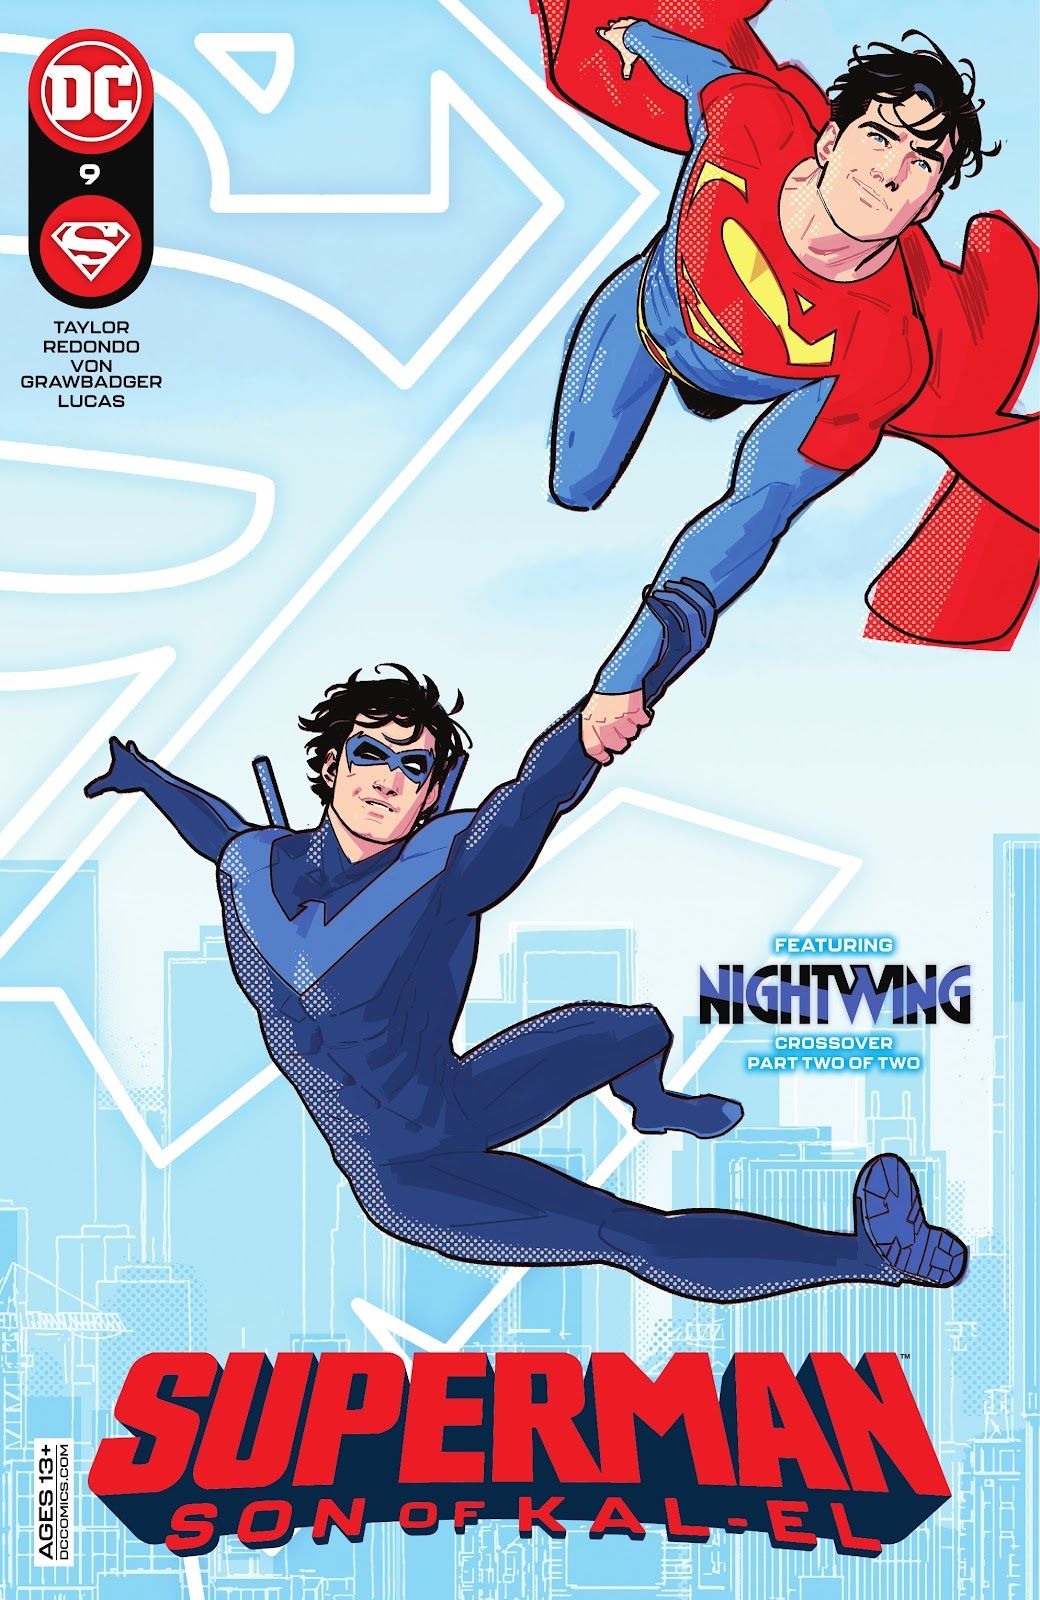 DC's Superman: Son of Kal-El #9 Comic Review